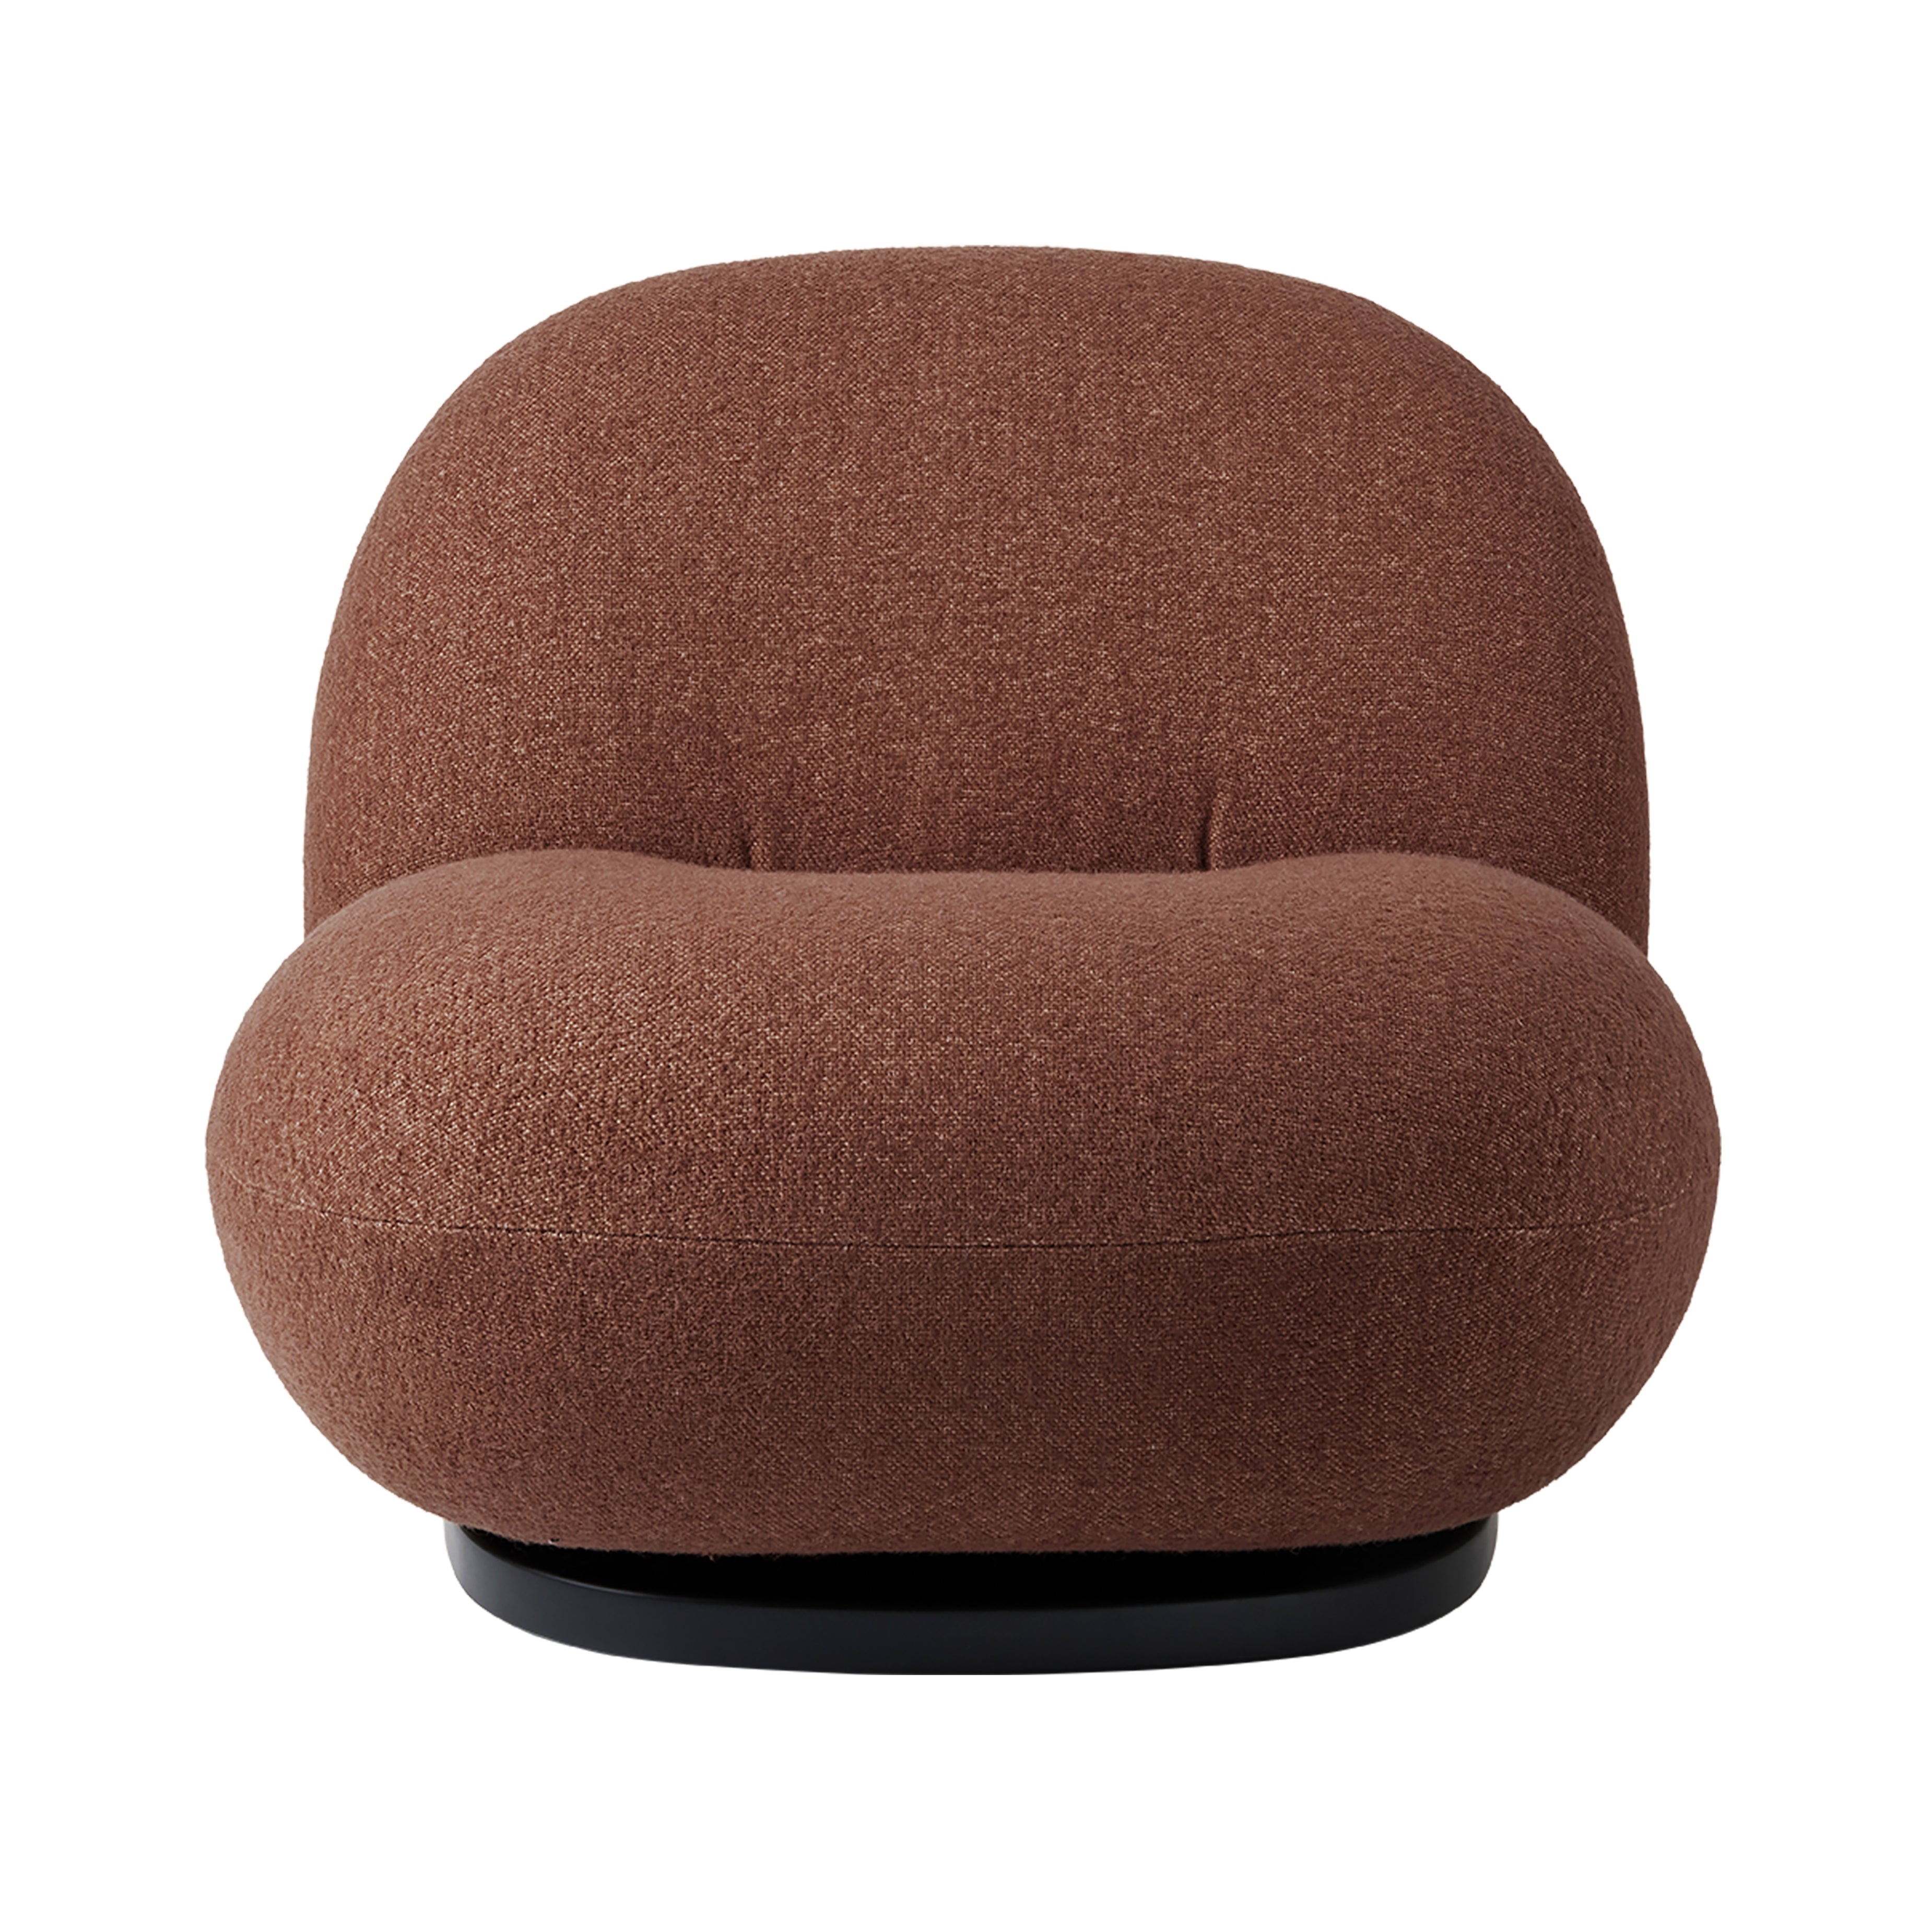 Pacha Lounge Chair: Black Semi Matt